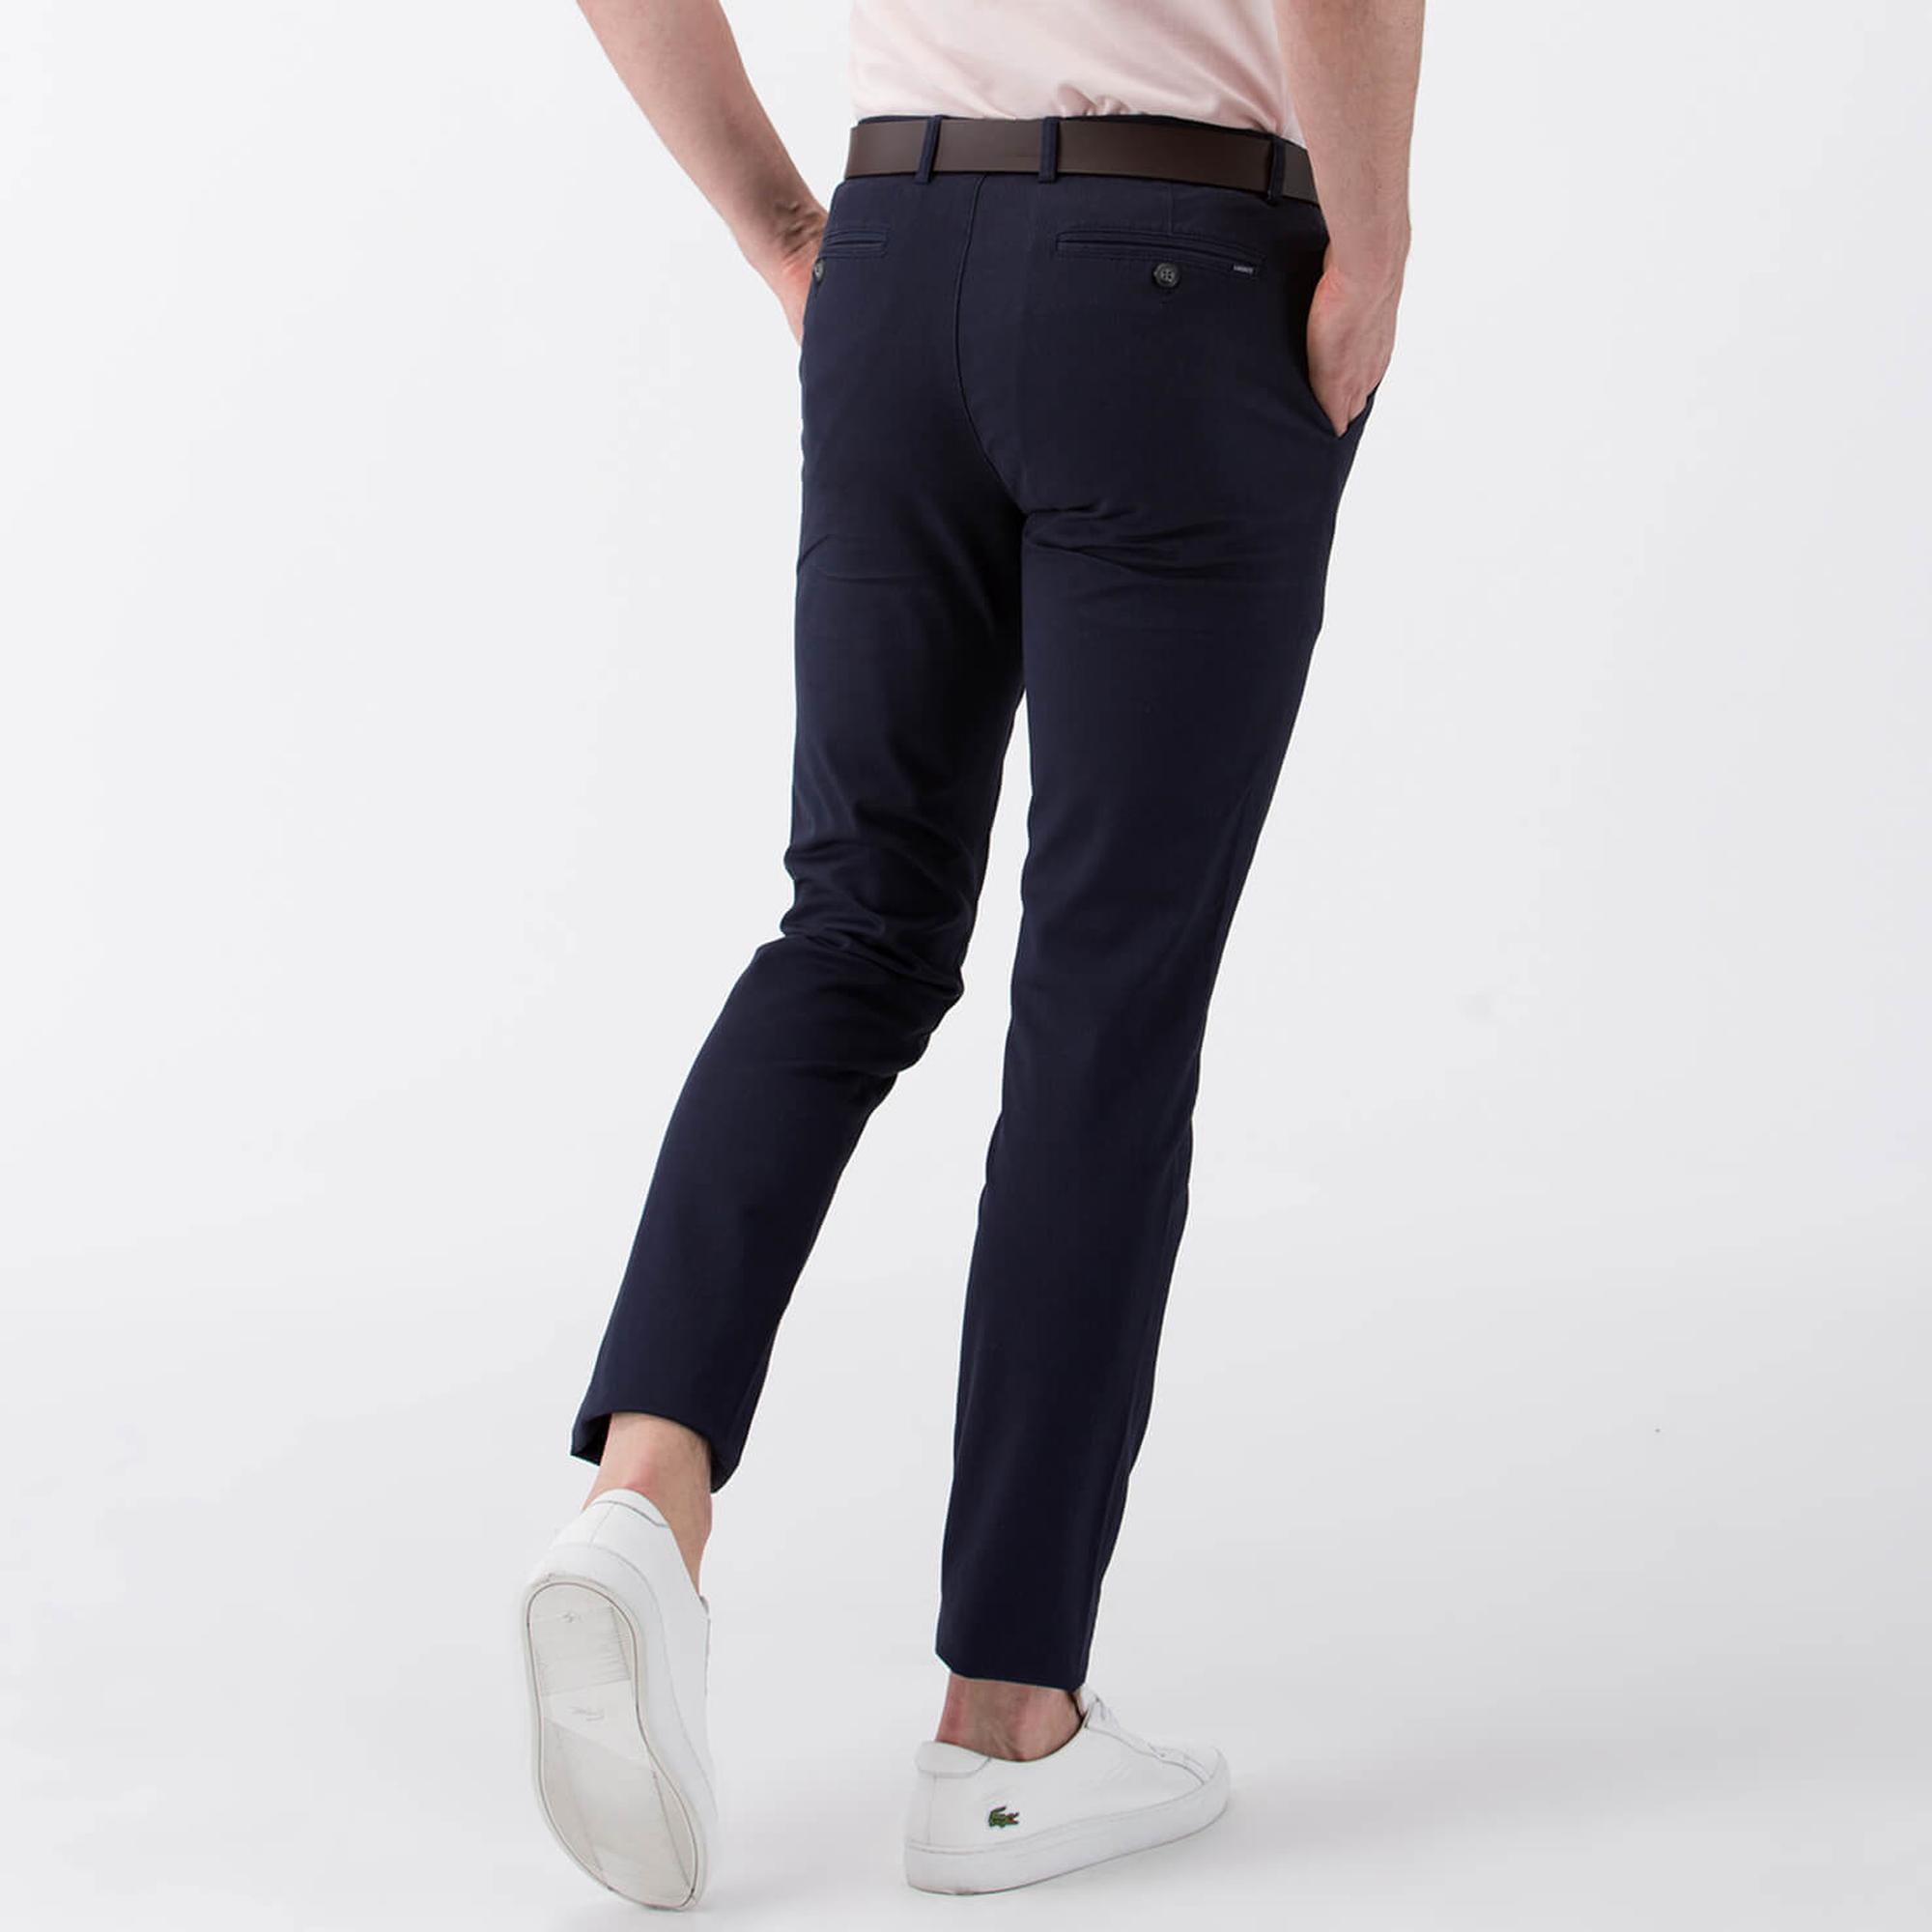 Lacoste Men's Sportswear Trousers